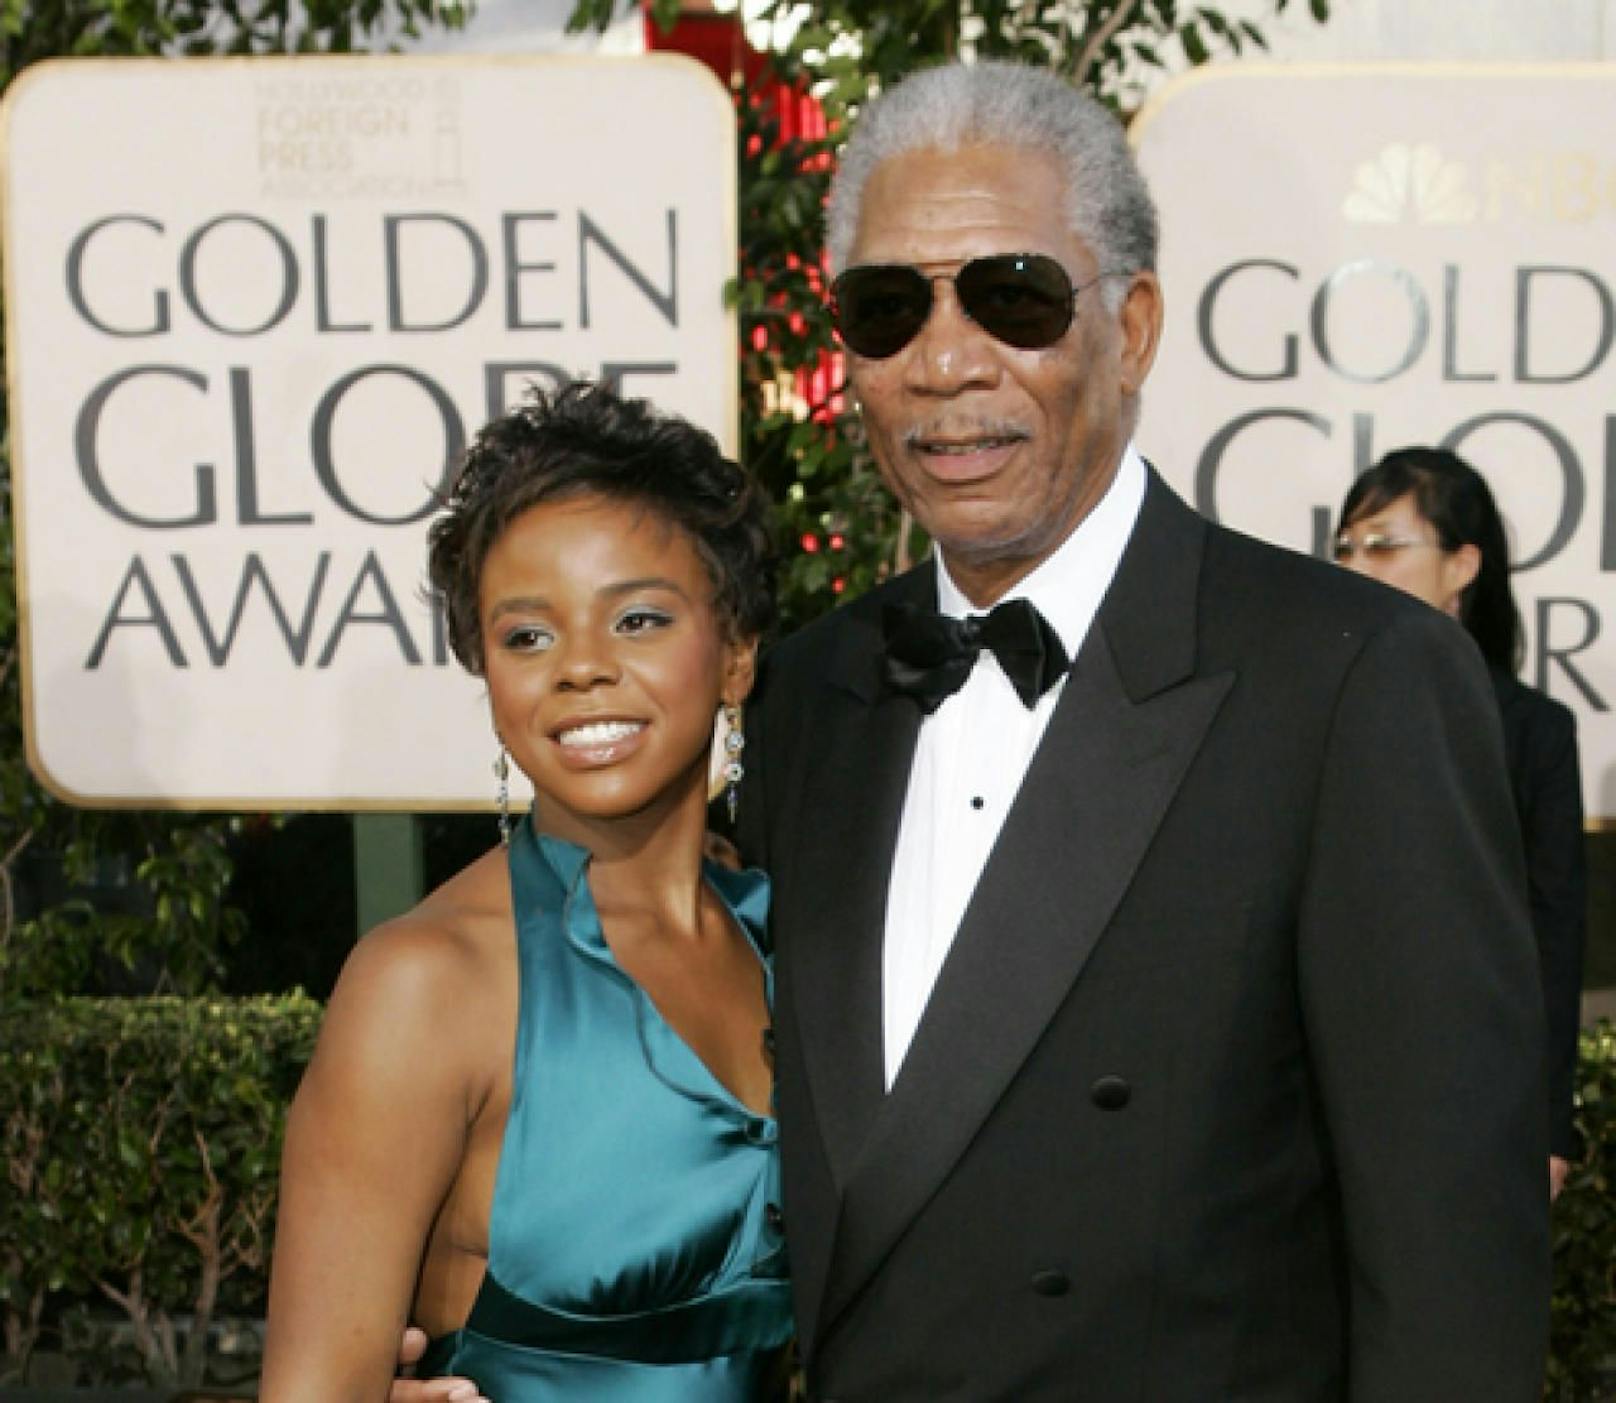 20 Jahre für Killer von Morgan Freemans Enkelin